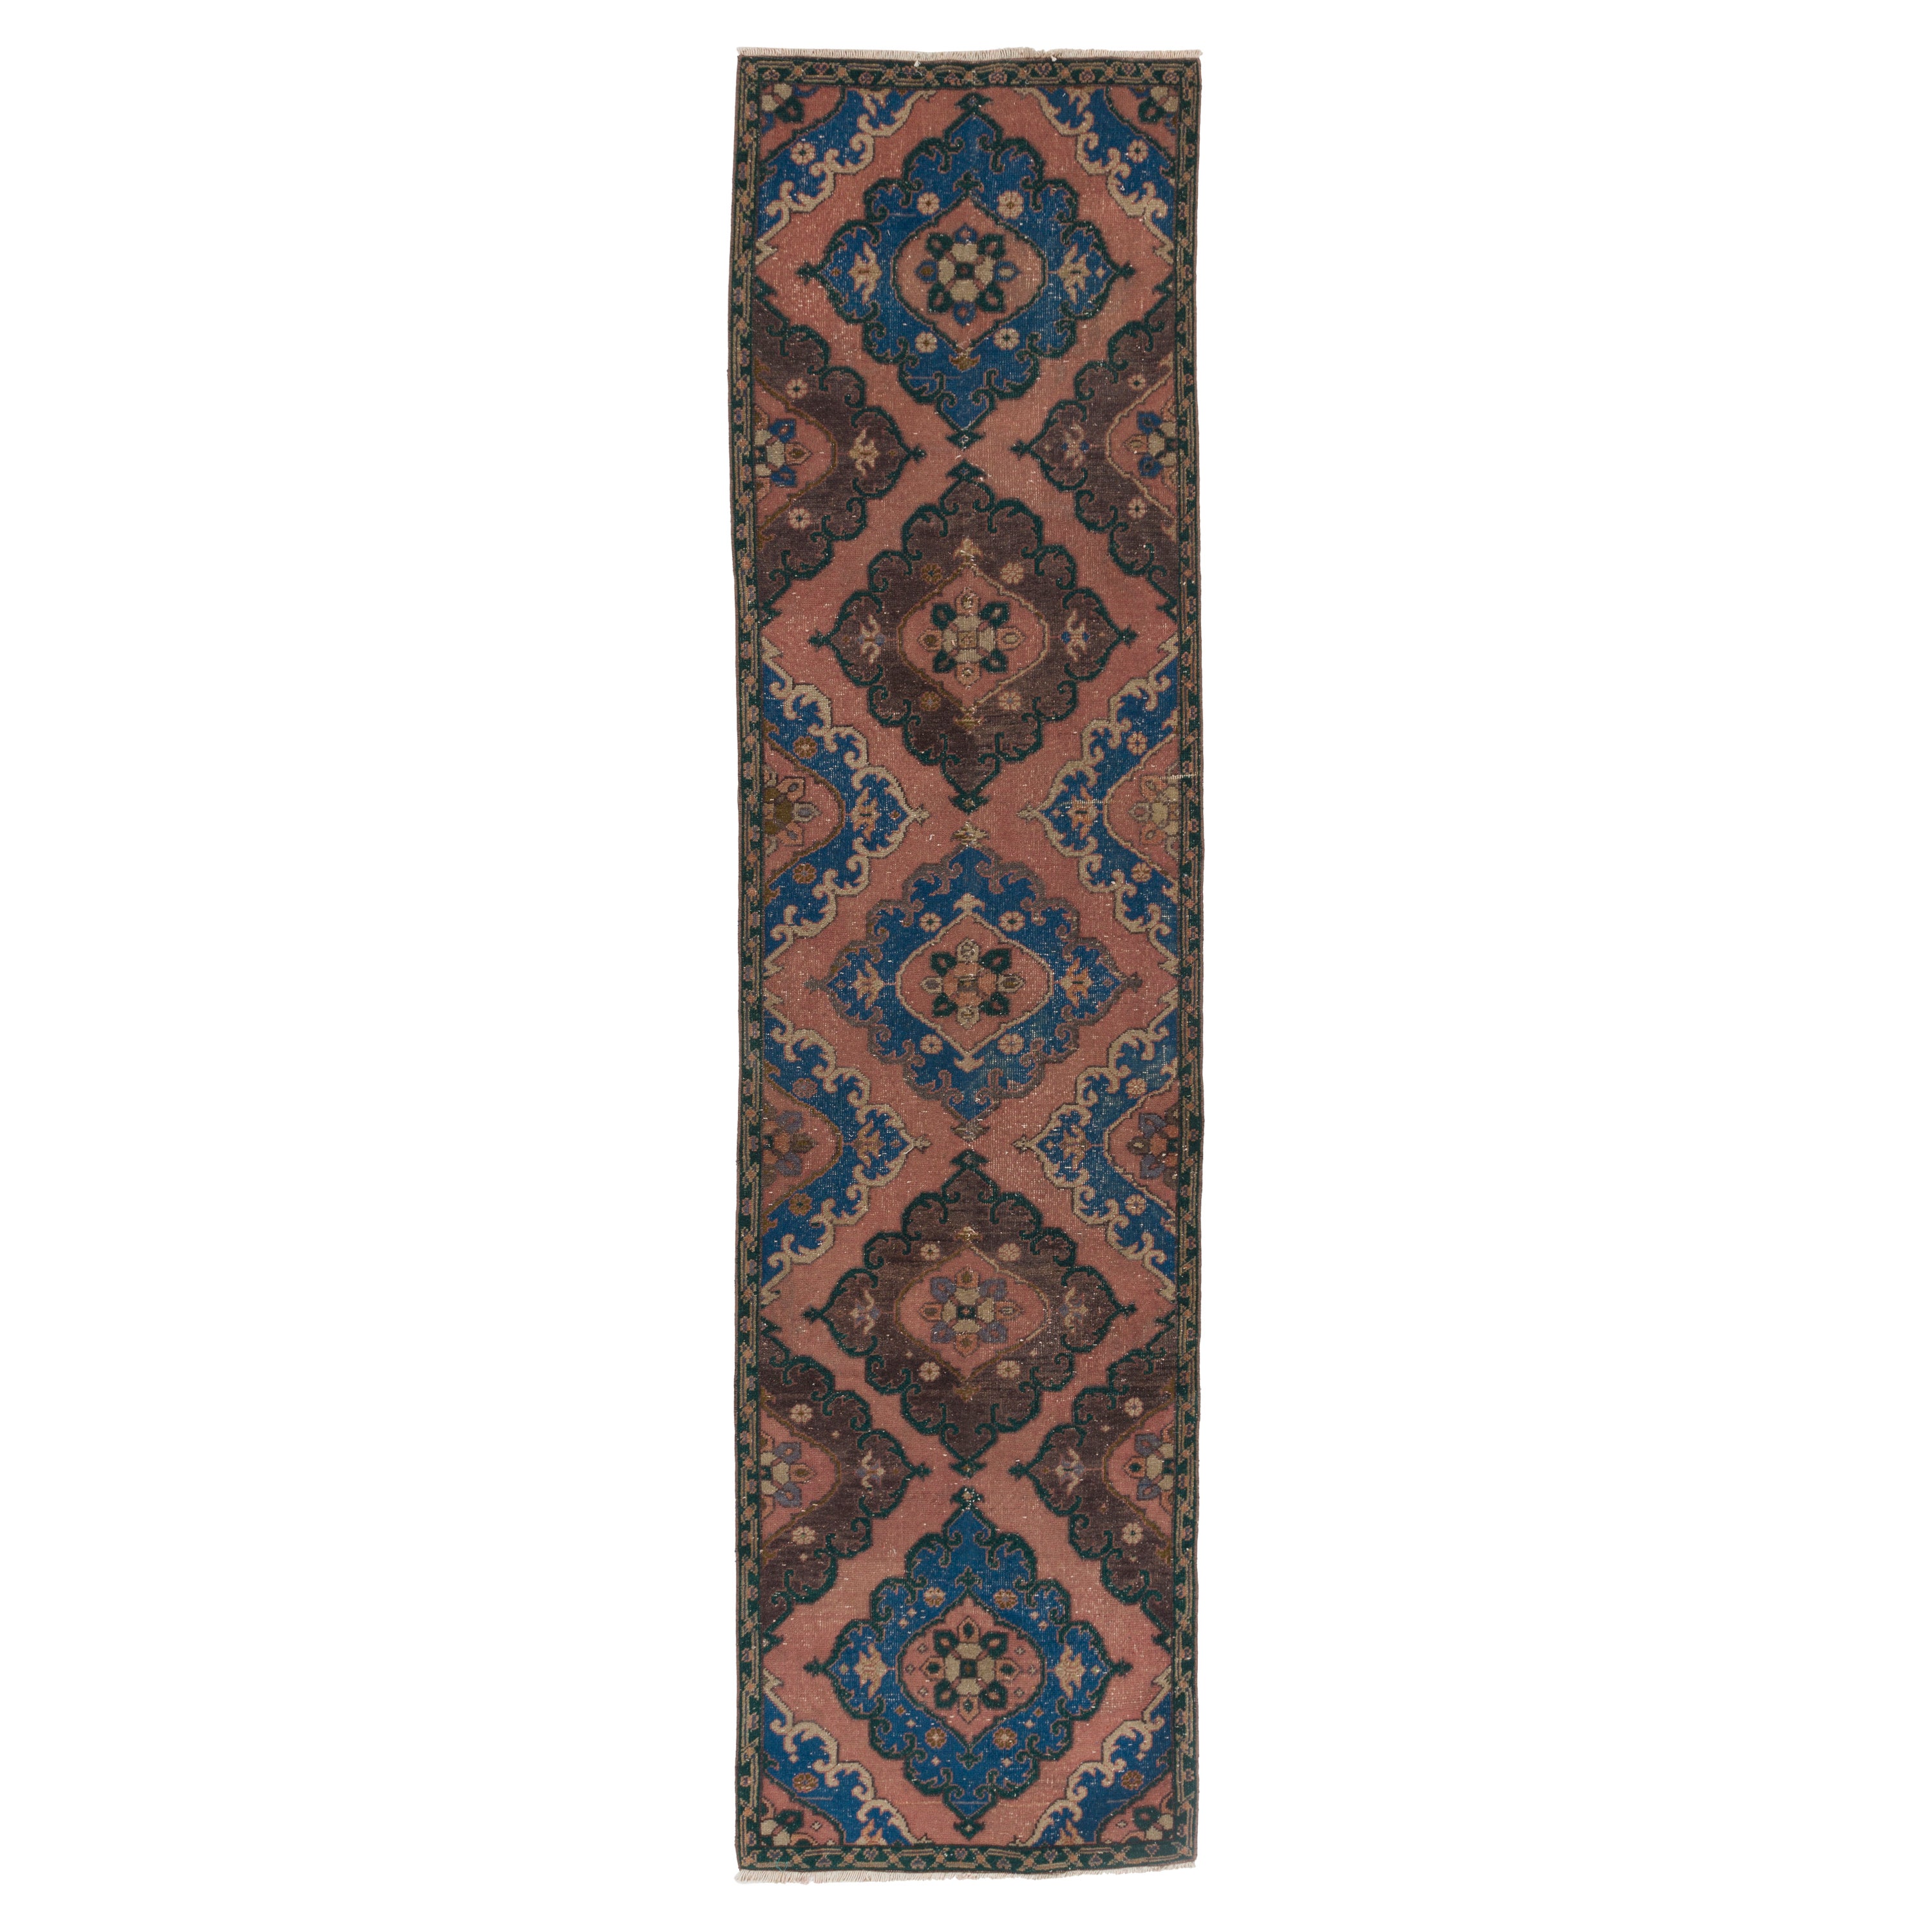 3x12 Ft Handmade Runner Rug, Vintage Oriental Carpet in Maroon Red, Blue For Sale